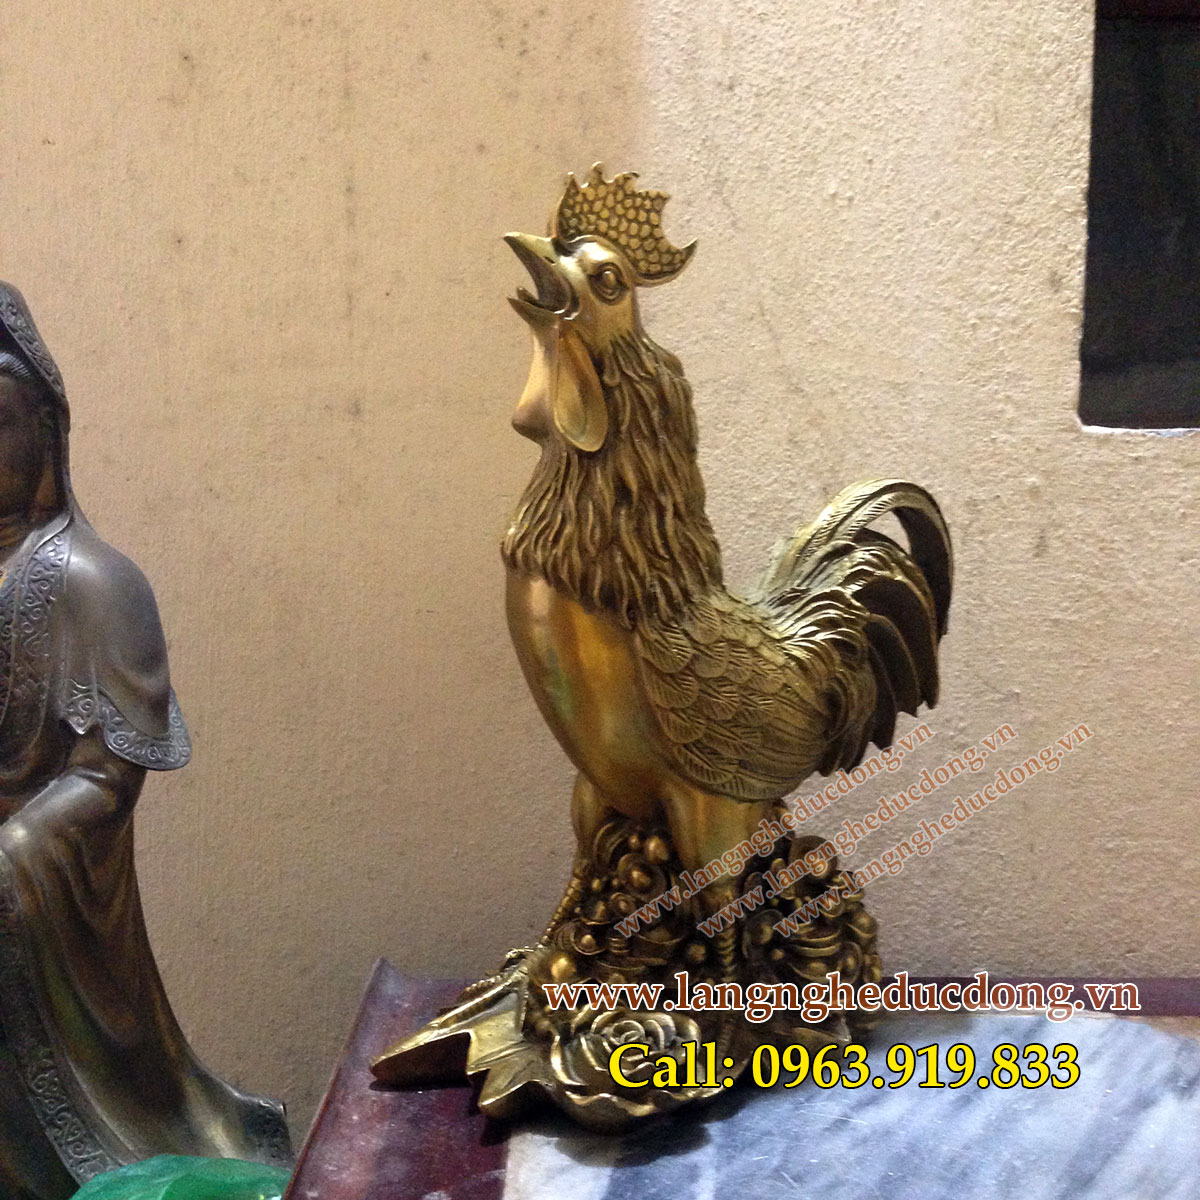 Tượng gà phong thủy chống lại thói trăng hoa bằng đồng, mẫu gà hoa hồng 30cm, gà phong thủy